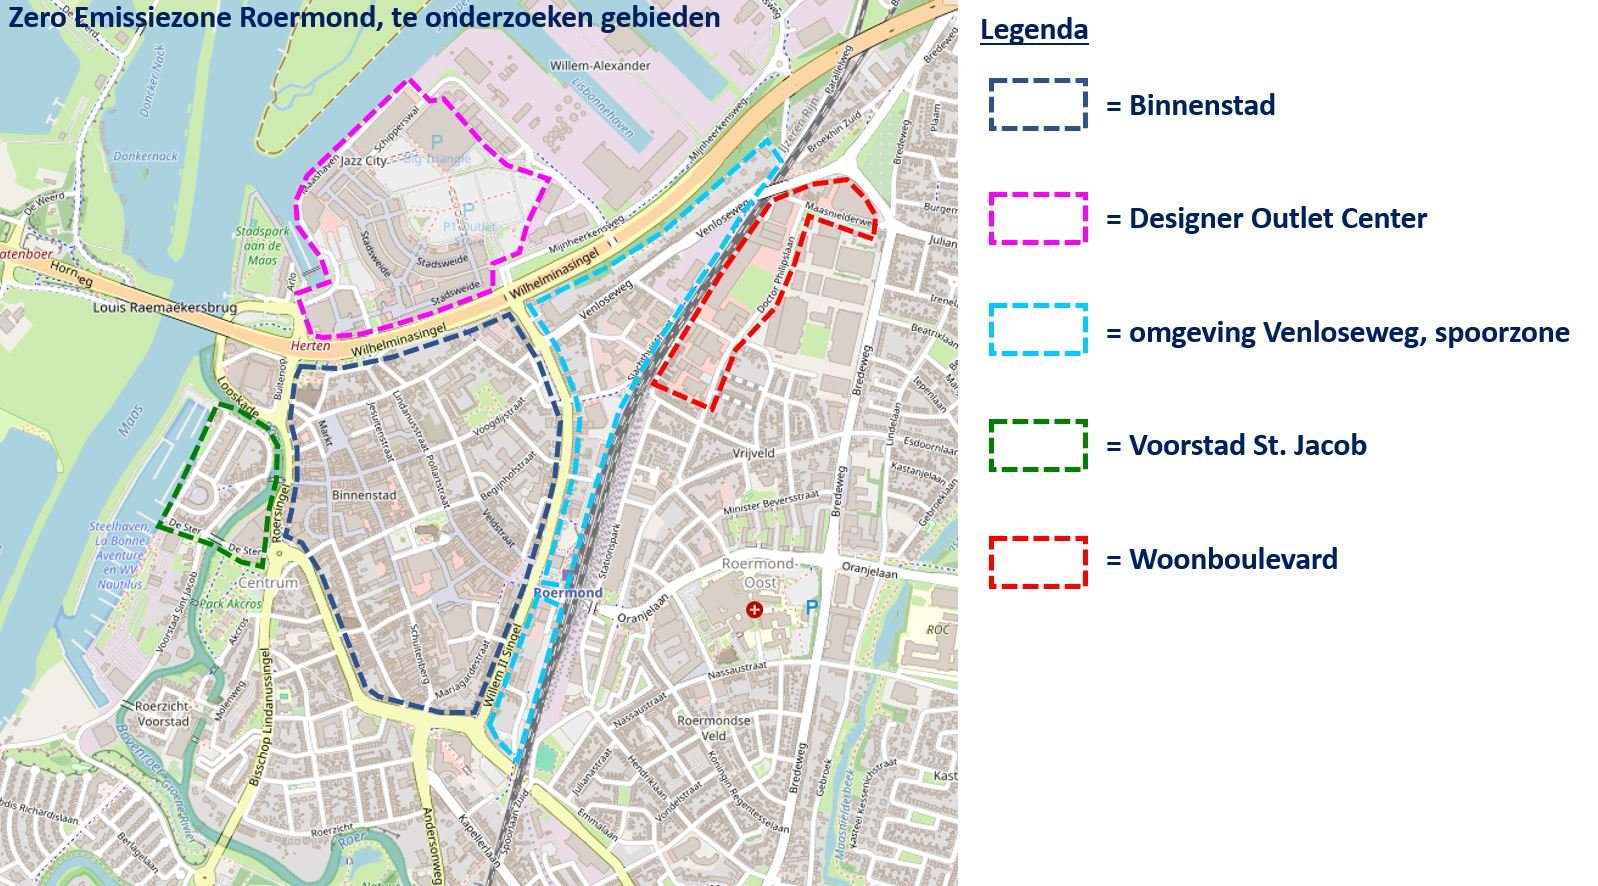 Te onderzoeken gebied zero emissie zone Roermond